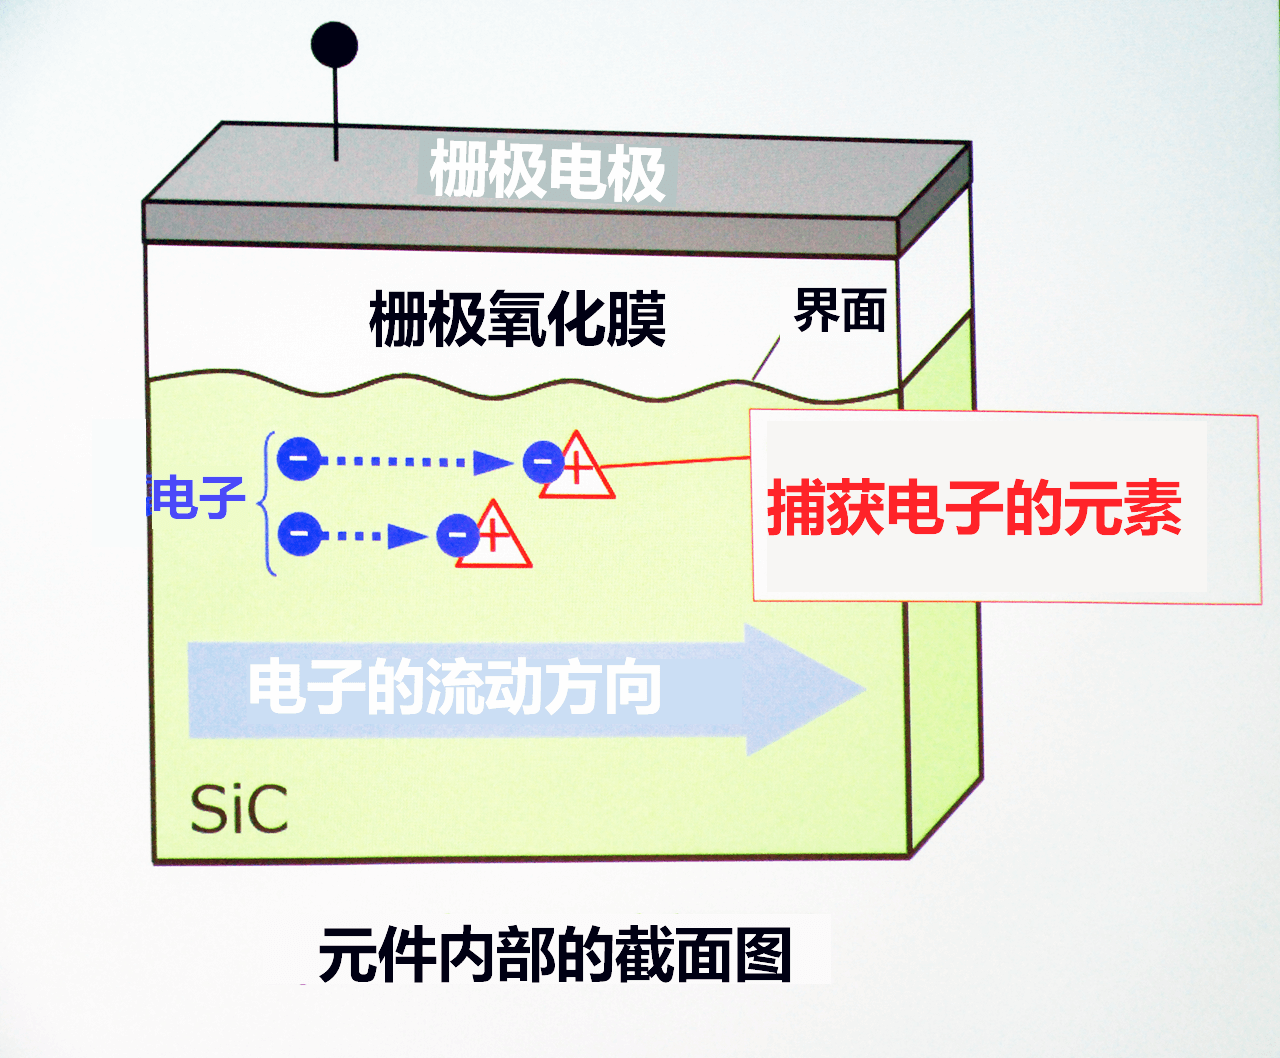 三菱电机与东大确认在SiC中添加硫可降低噪声影响